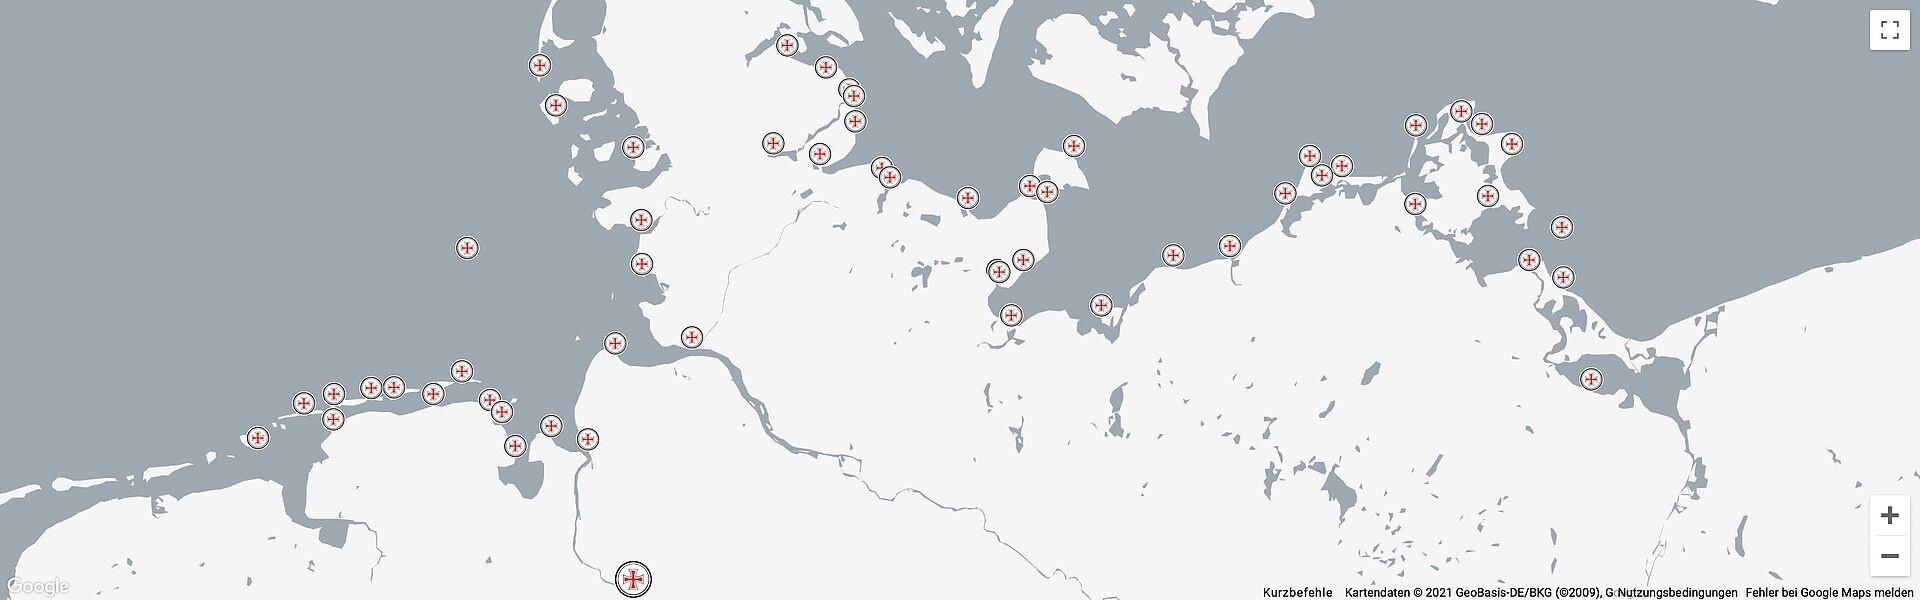 Alle Standorte der Seenotretter auf einer Karte